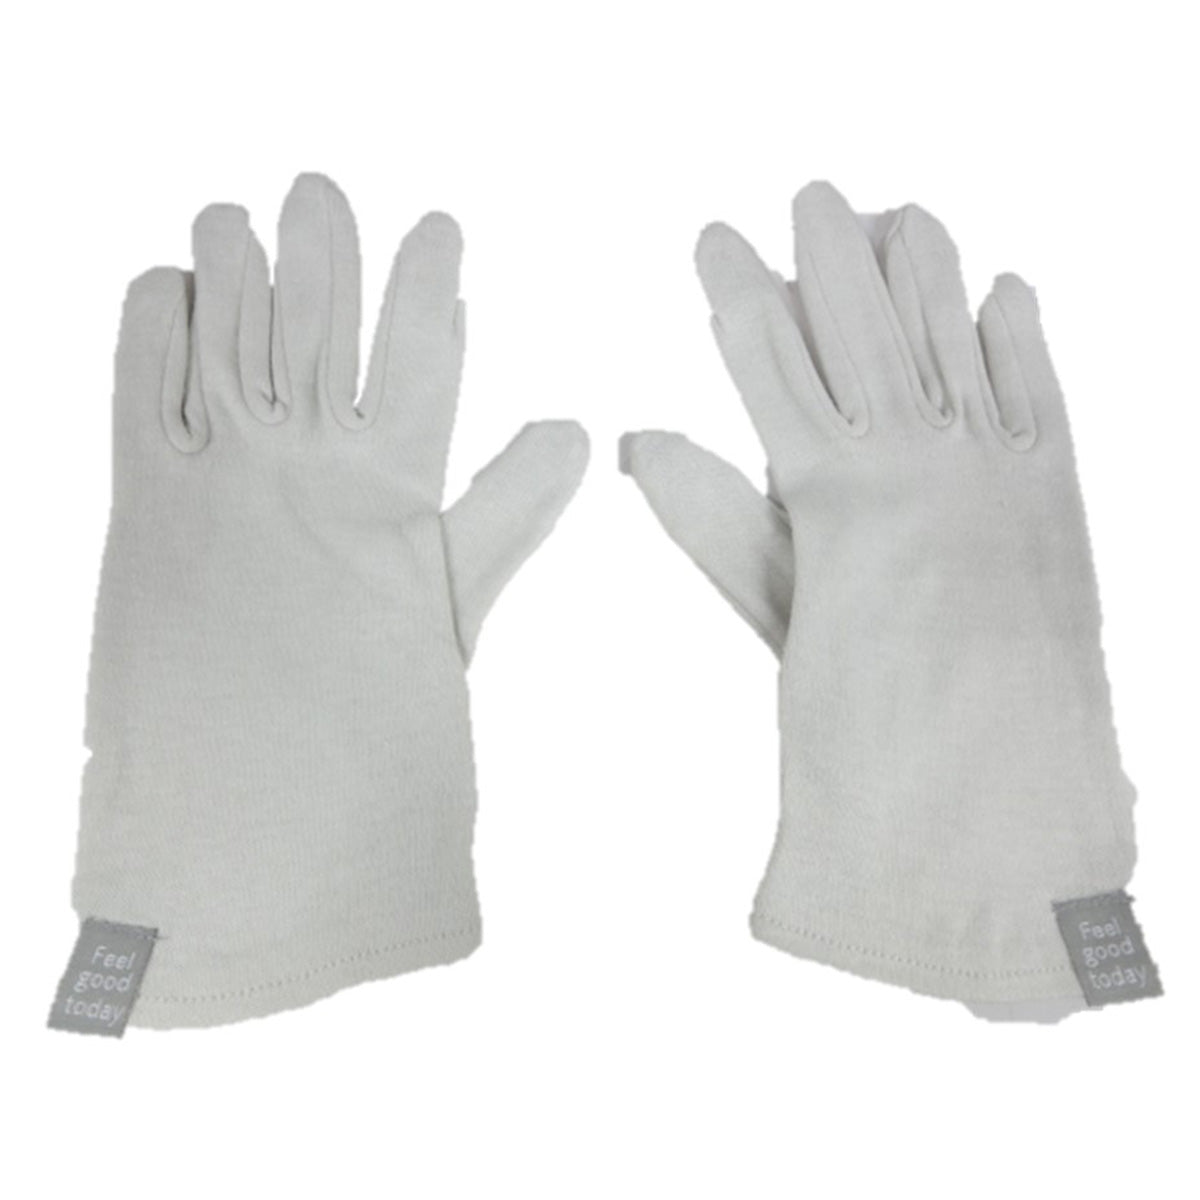 保湿用グローブ 手袋 乾燥対策 グレー 9001/359656